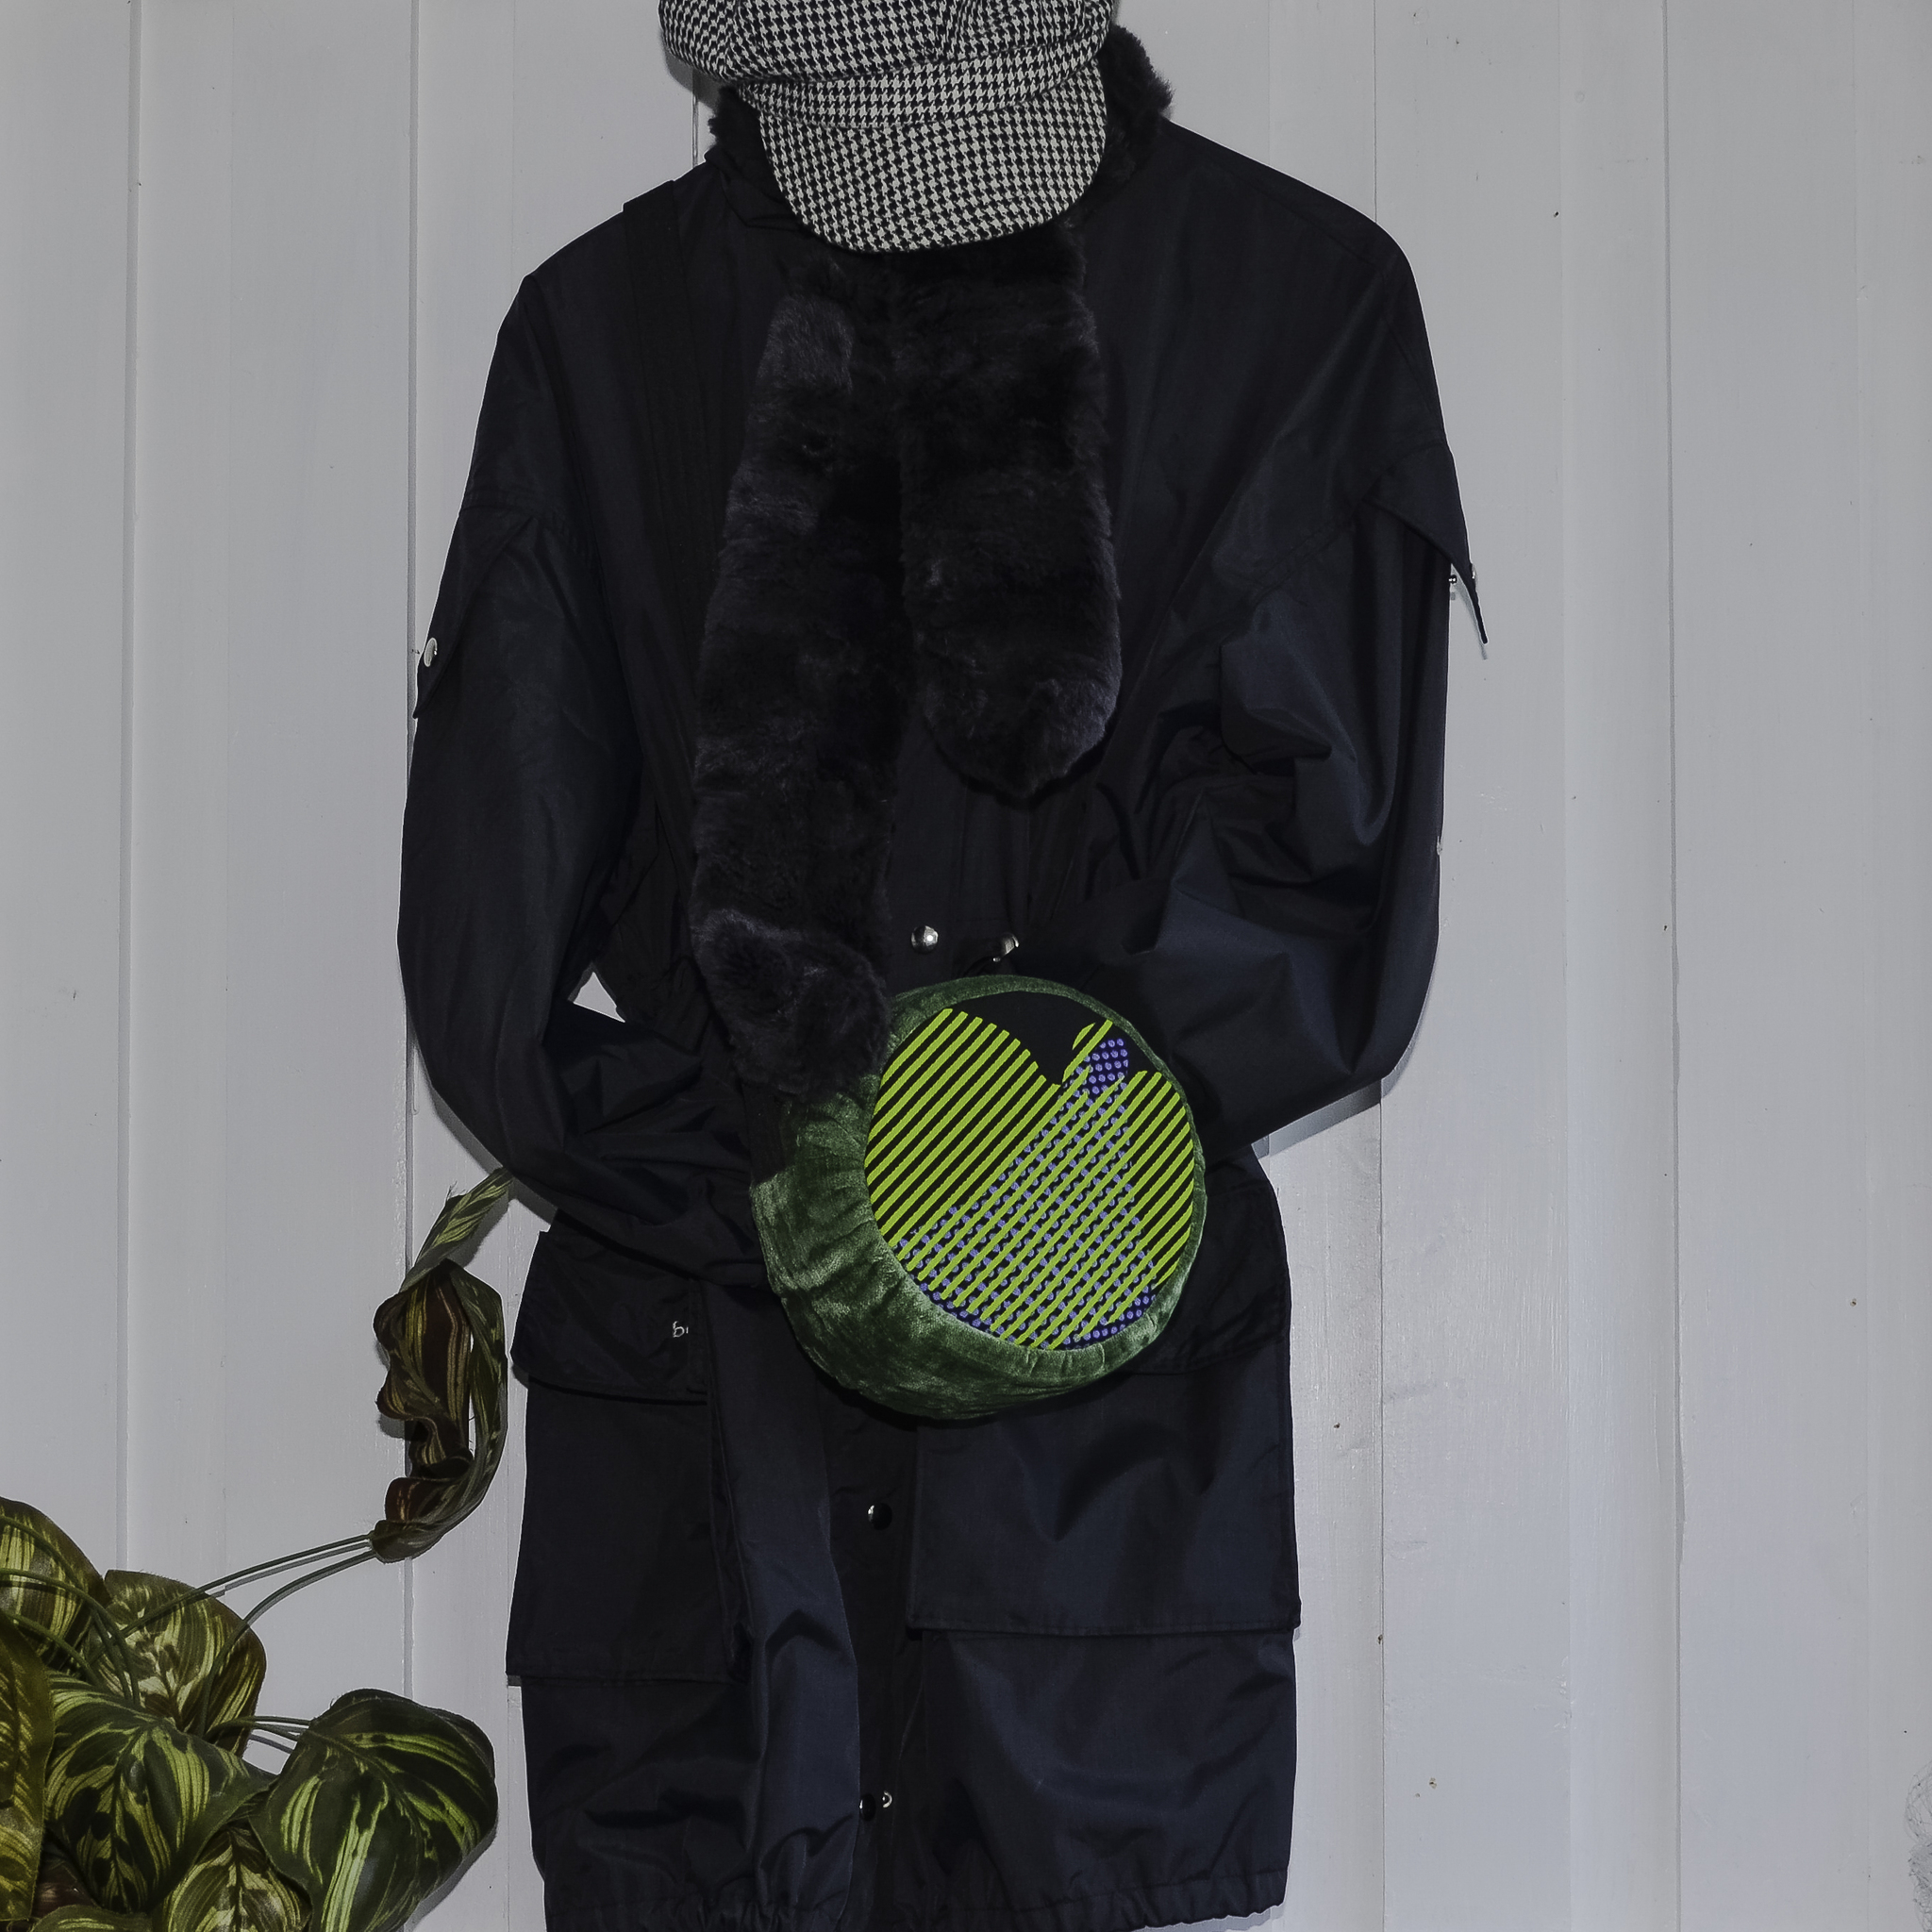 Rund väska med gröna blad i hjärtform hänger på svart kappa